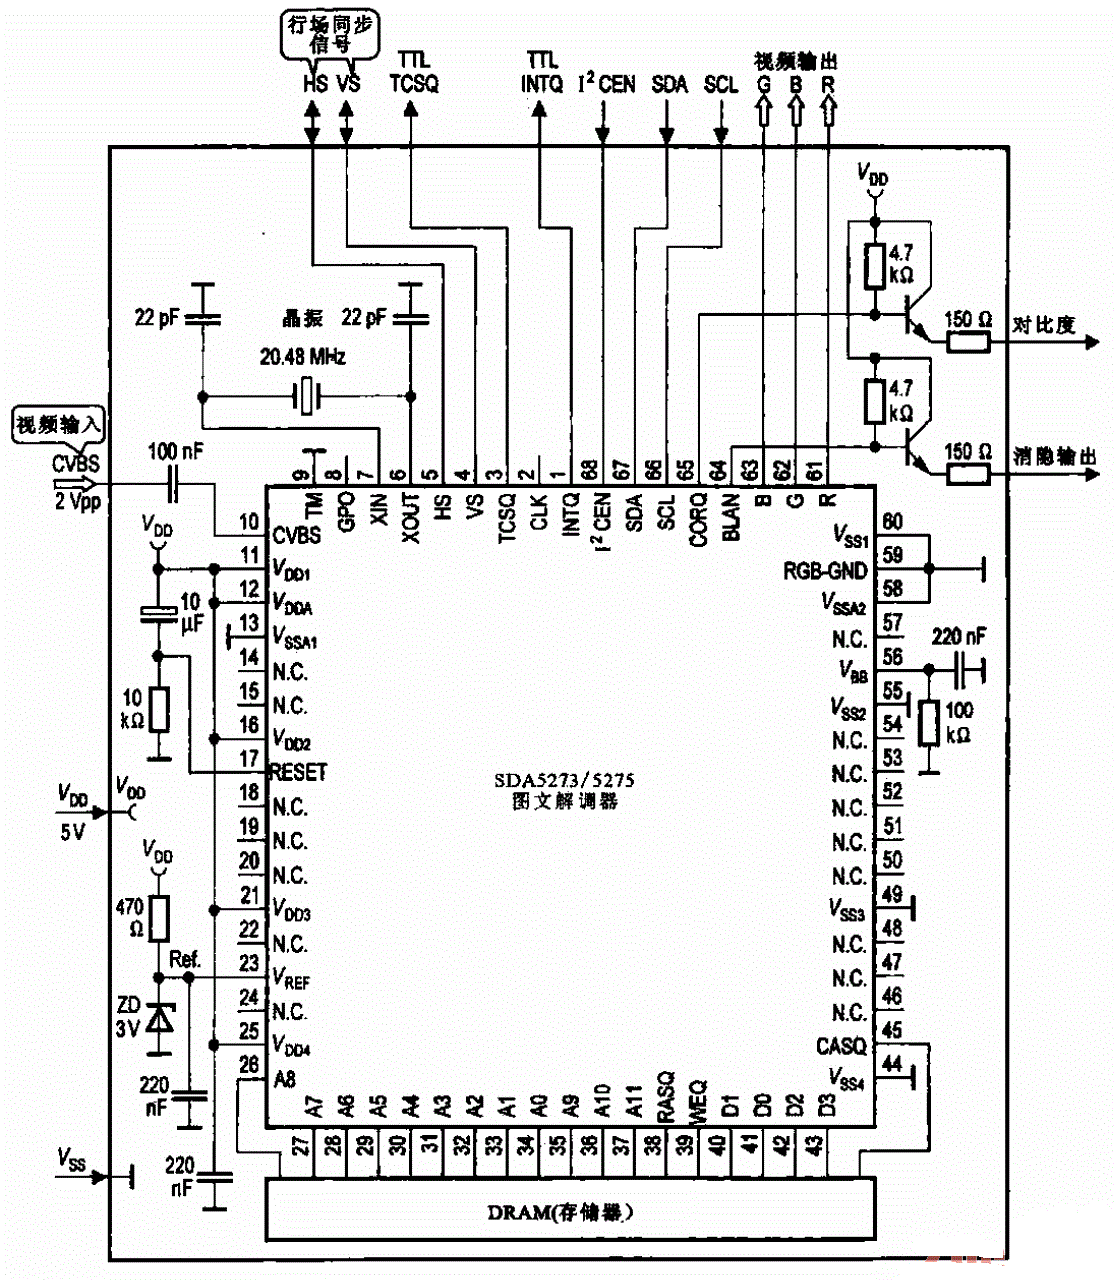 采用SDA5273-75芯片的图文解码器电路